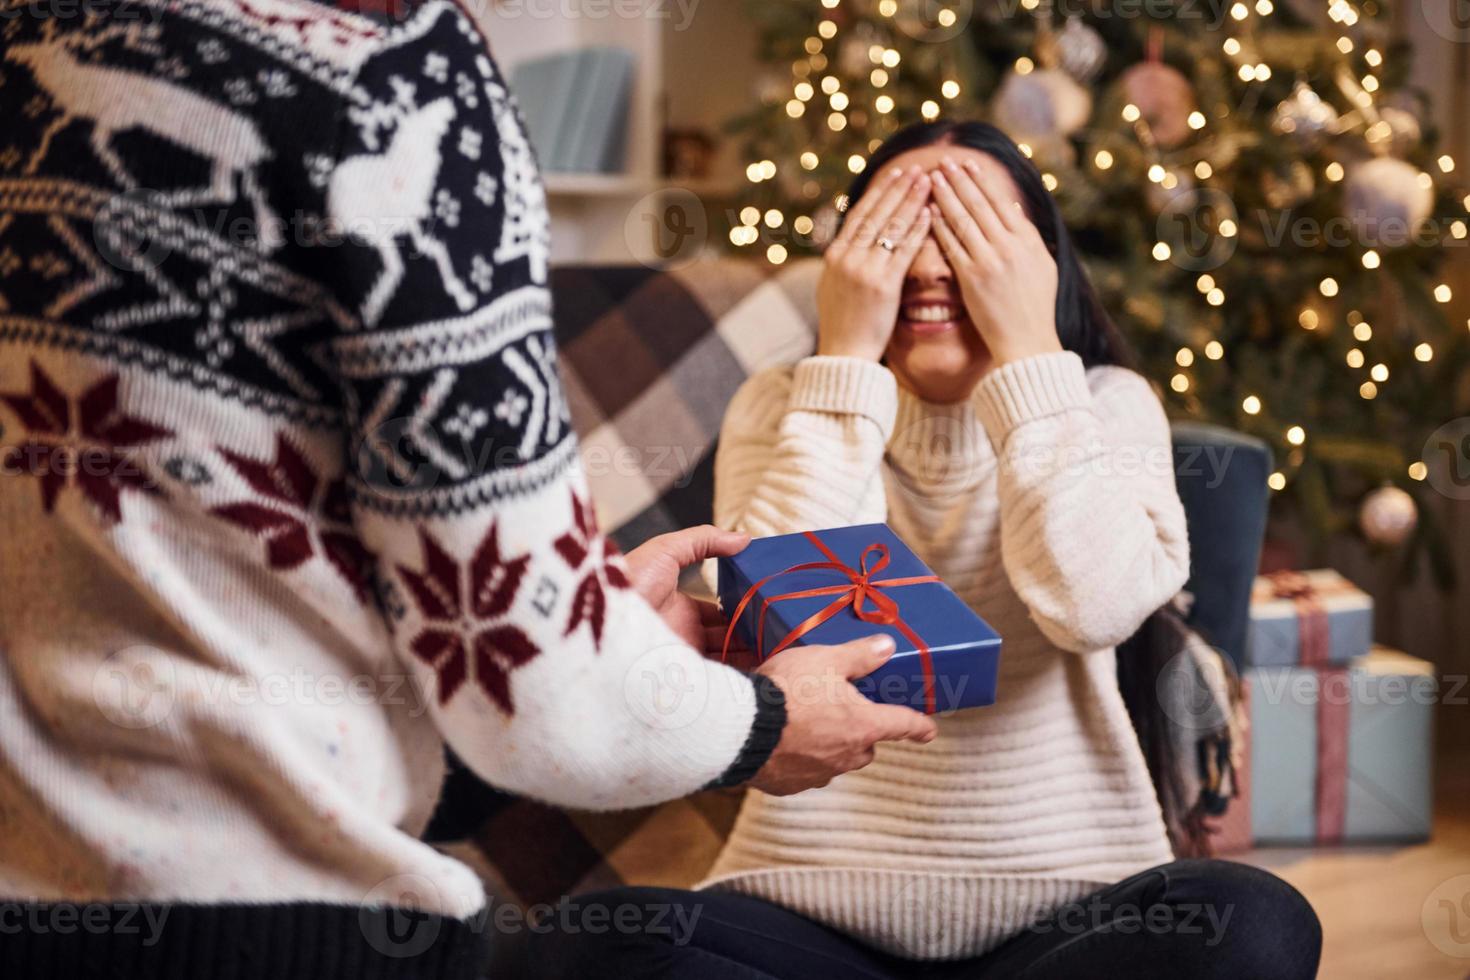 mann bedeckt augen seiner freundin und gibt neujahrsüberraschung in weihnachtlich dekoriertem raum foto